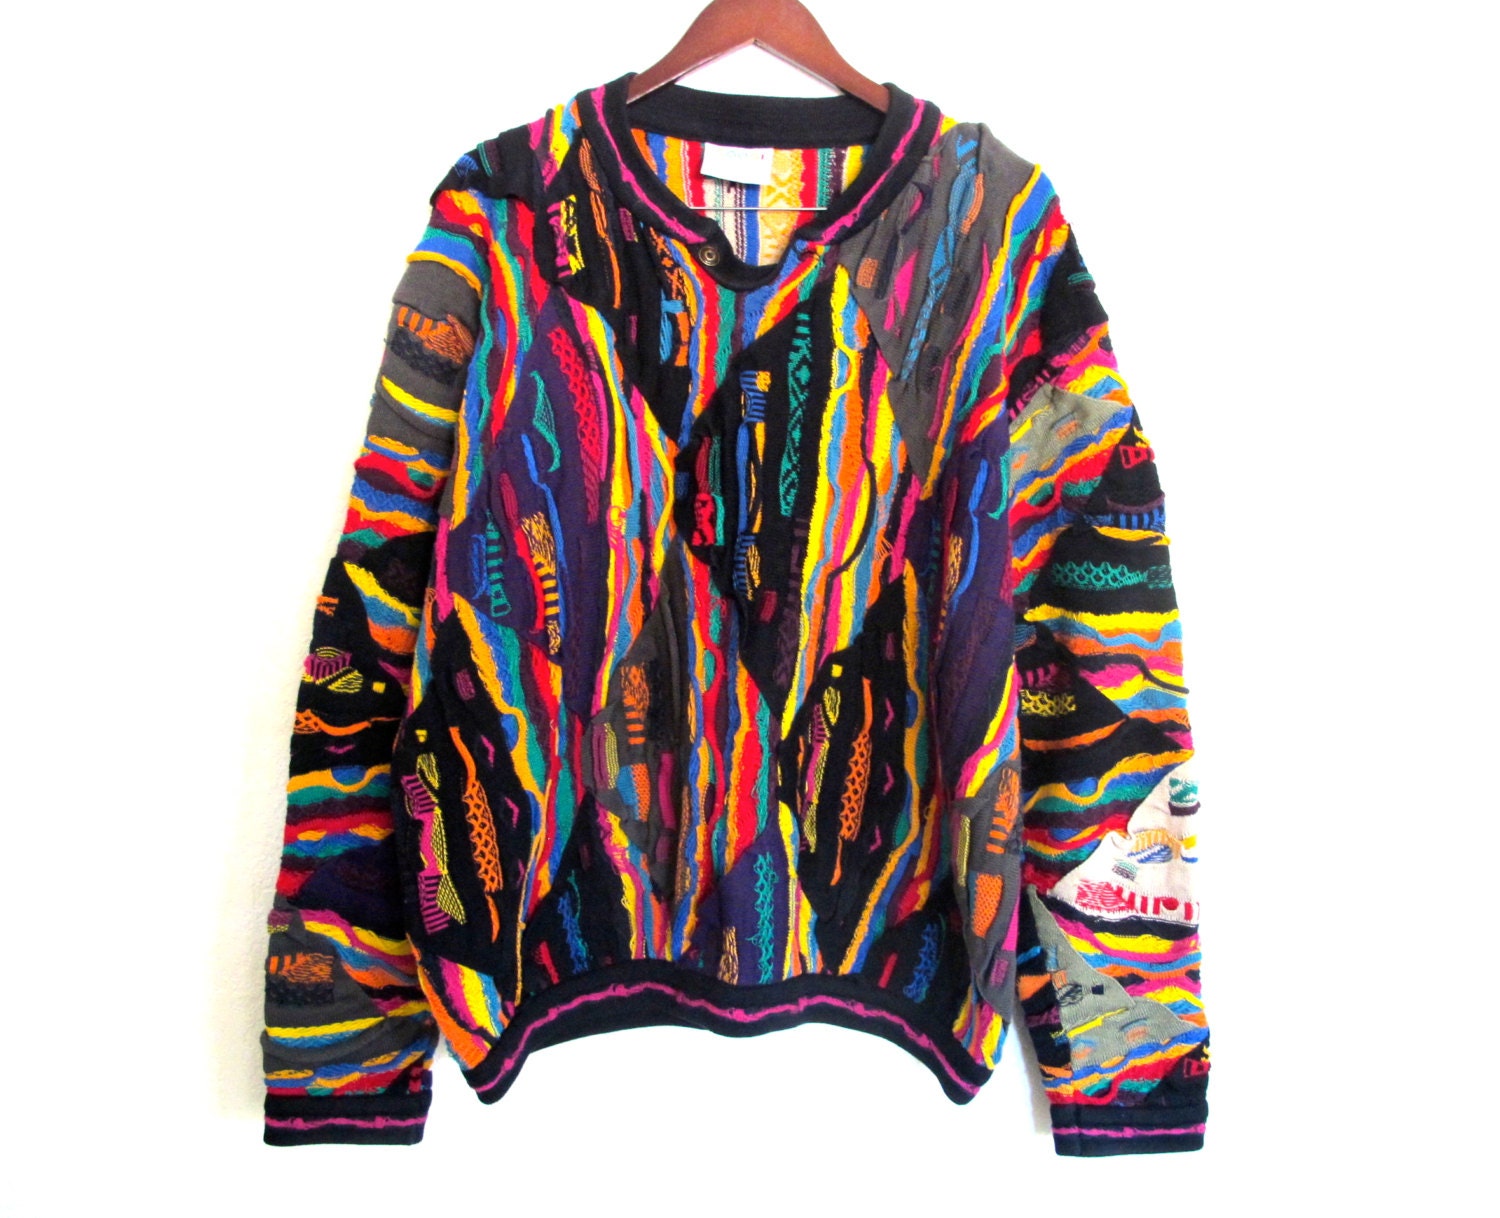 COOGI Australia Bold Bright Colorful Sweater size Mens L